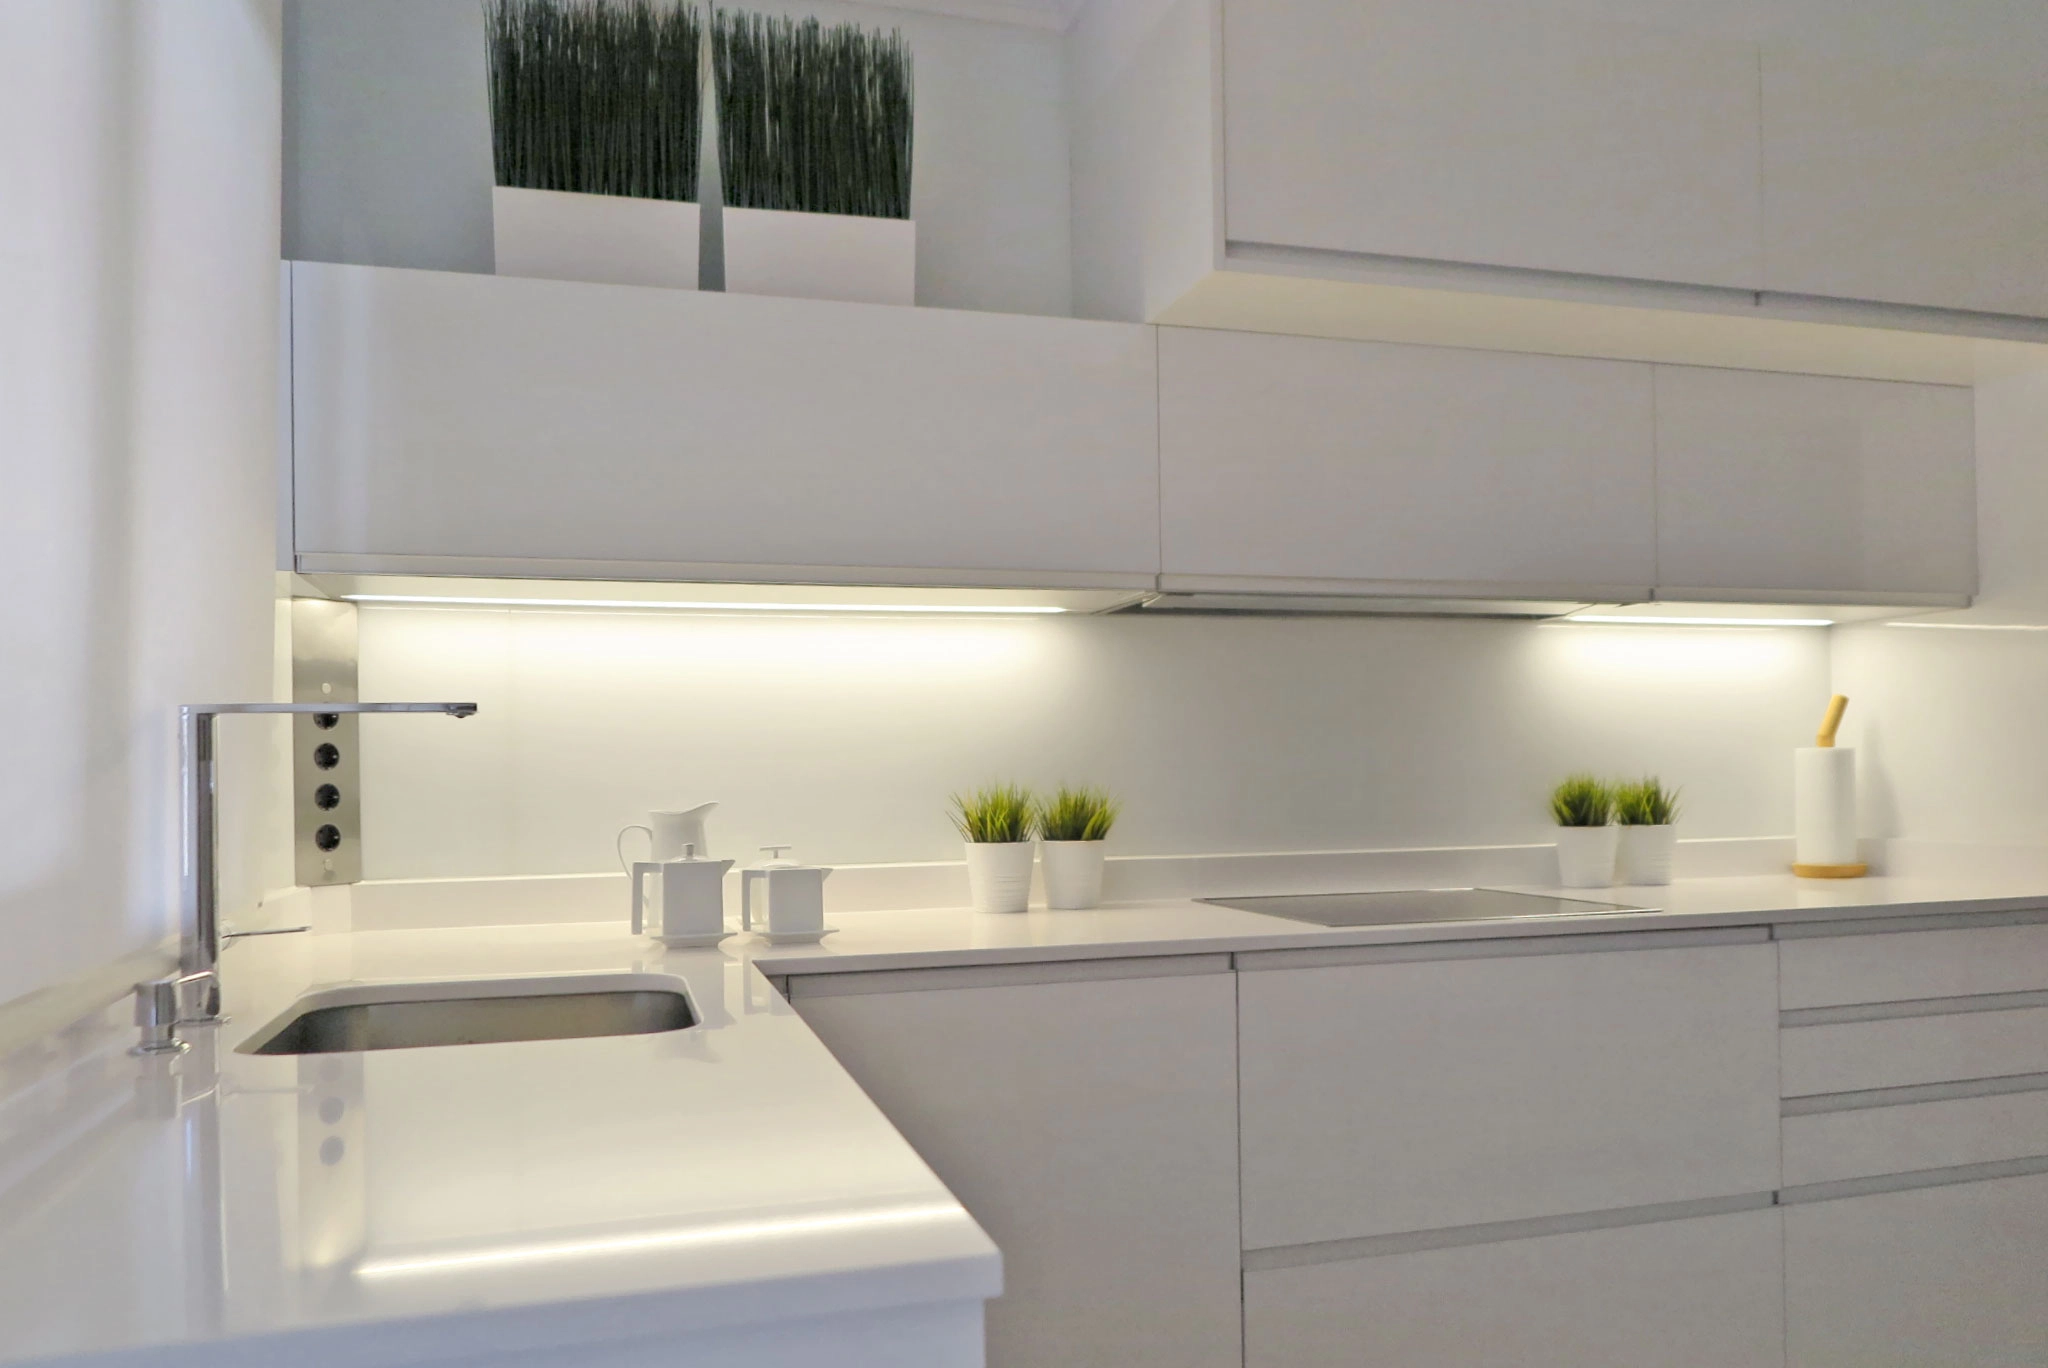 Detalle de cocina blanca en ele con fregadero, vitrocerámica, iluminación led en la base de los muebles altos y tirador uñero integrado en todo el mobiliario